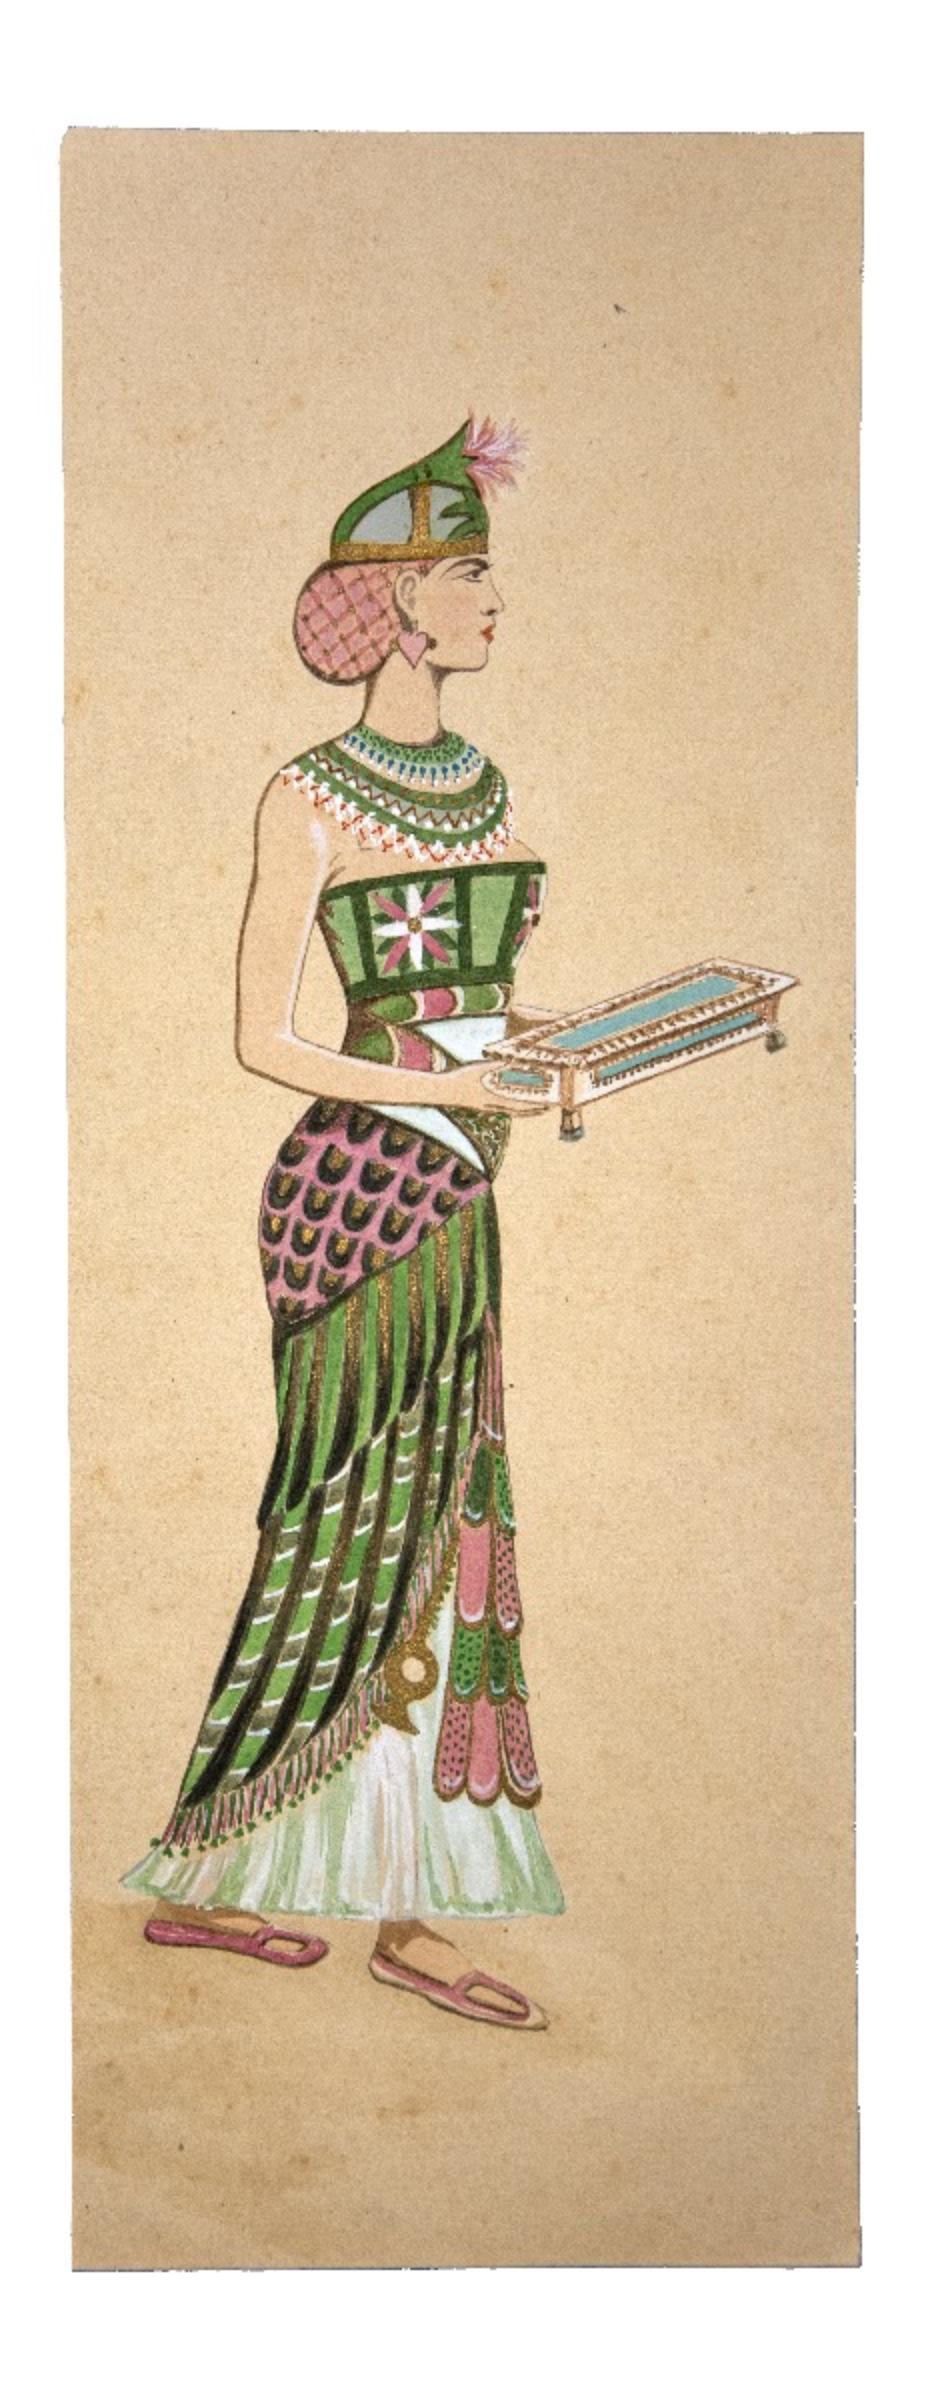 Unknown Figurative Art - Costume for Aida - Tempera and Watercolor - 1920s